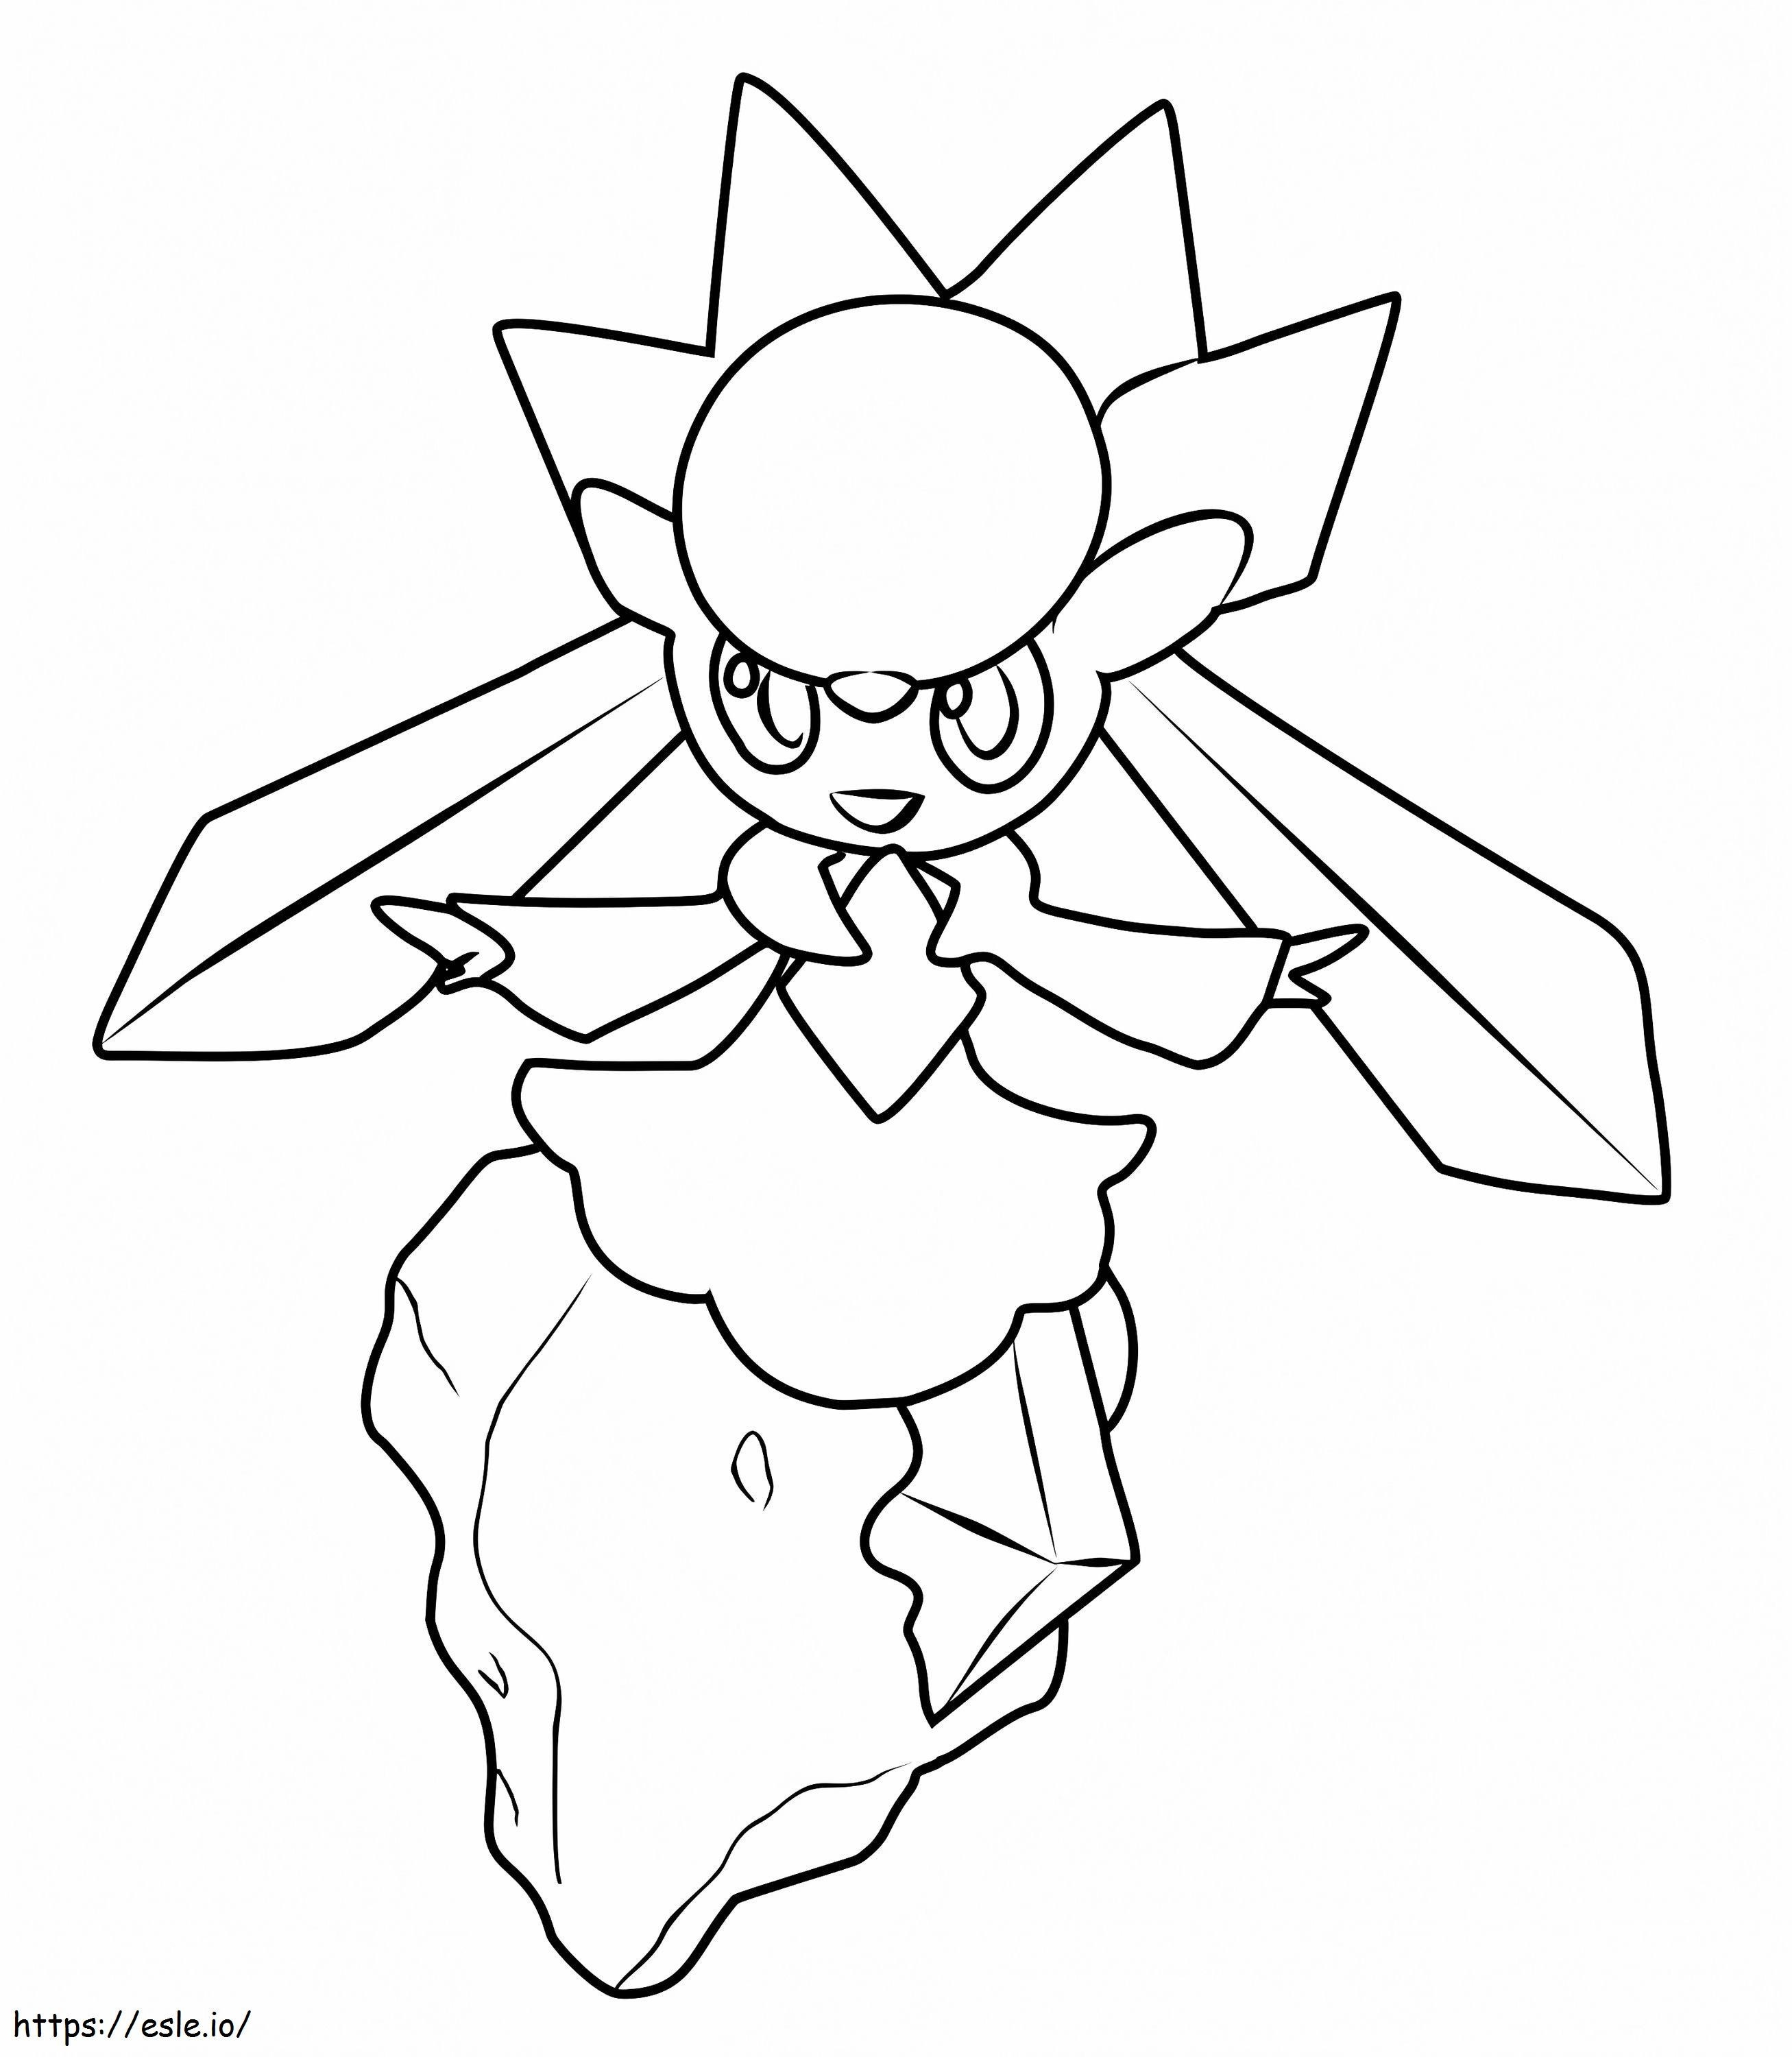 Coloriage Pokémon Diancie à imprimer dessin